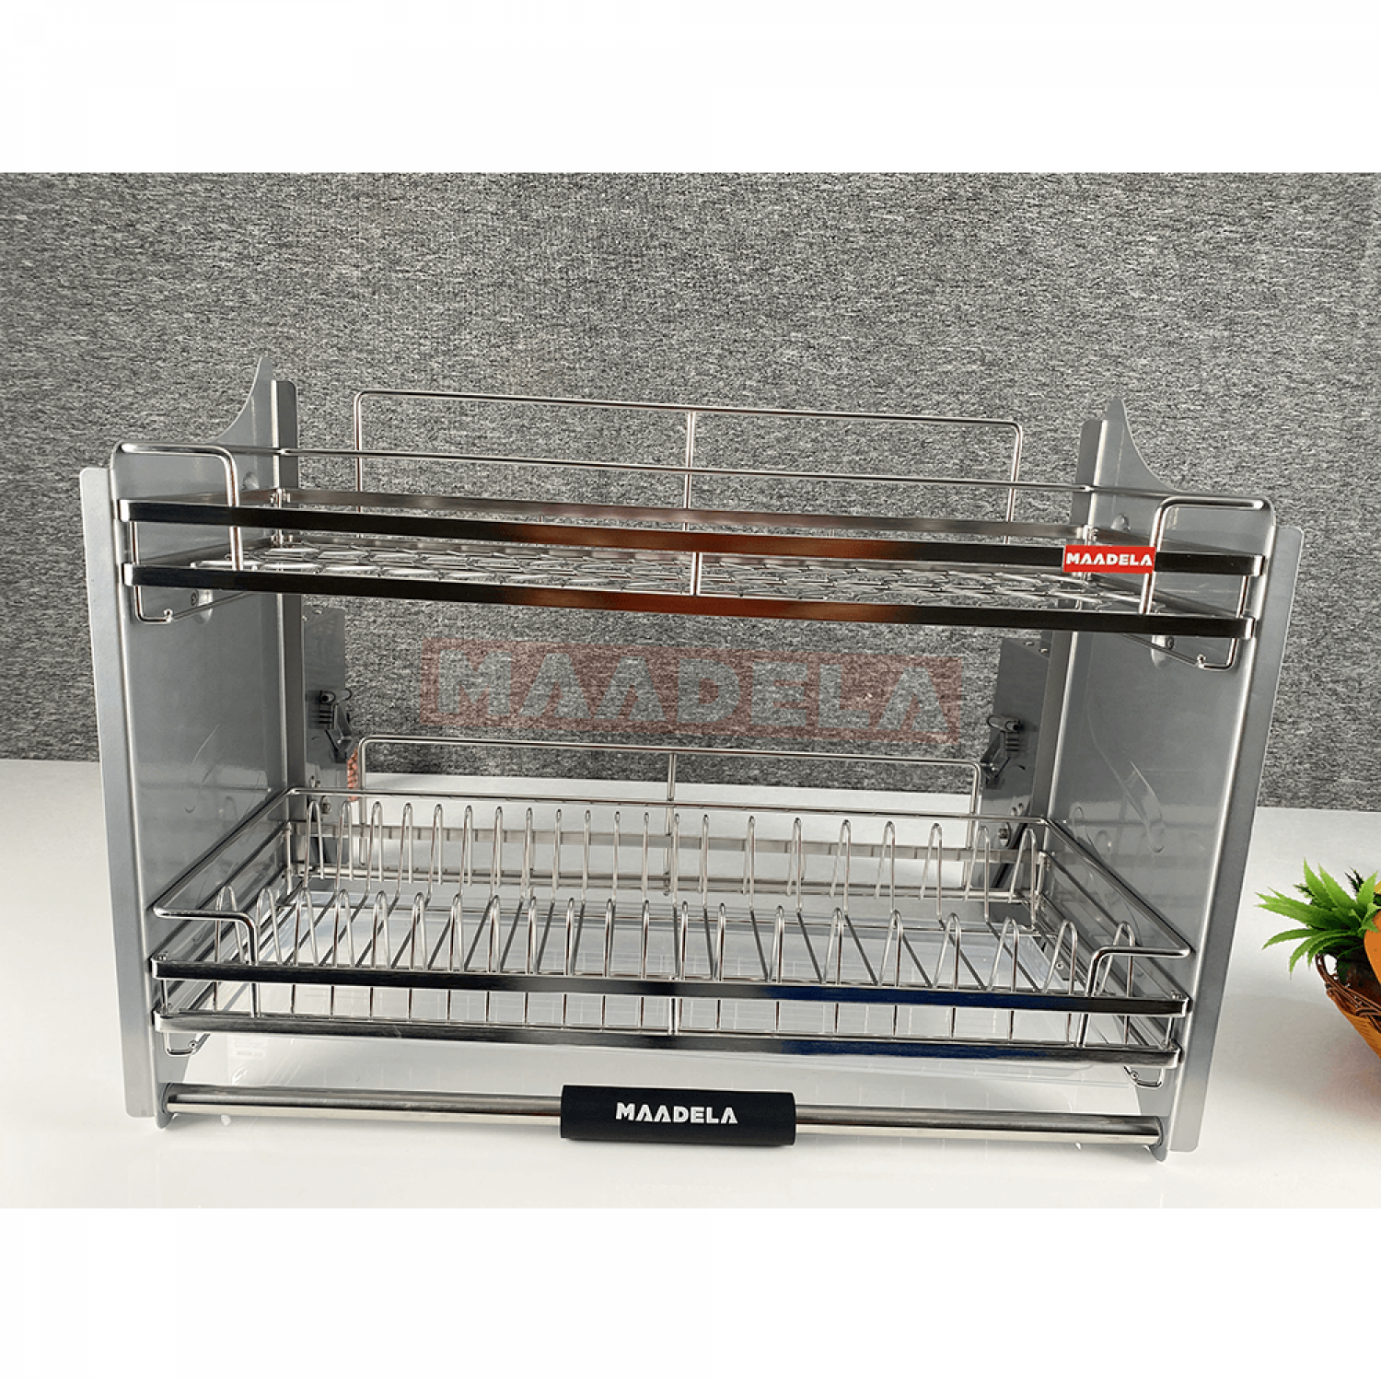 Giá bát đĩa nâng hạ Inox 304 cho tủ bếp trên Maadela MP-G30-2.90 sở hữu thiết kế sang trọng và hiện đại, thích hợp với mọi không gian nhà bếp